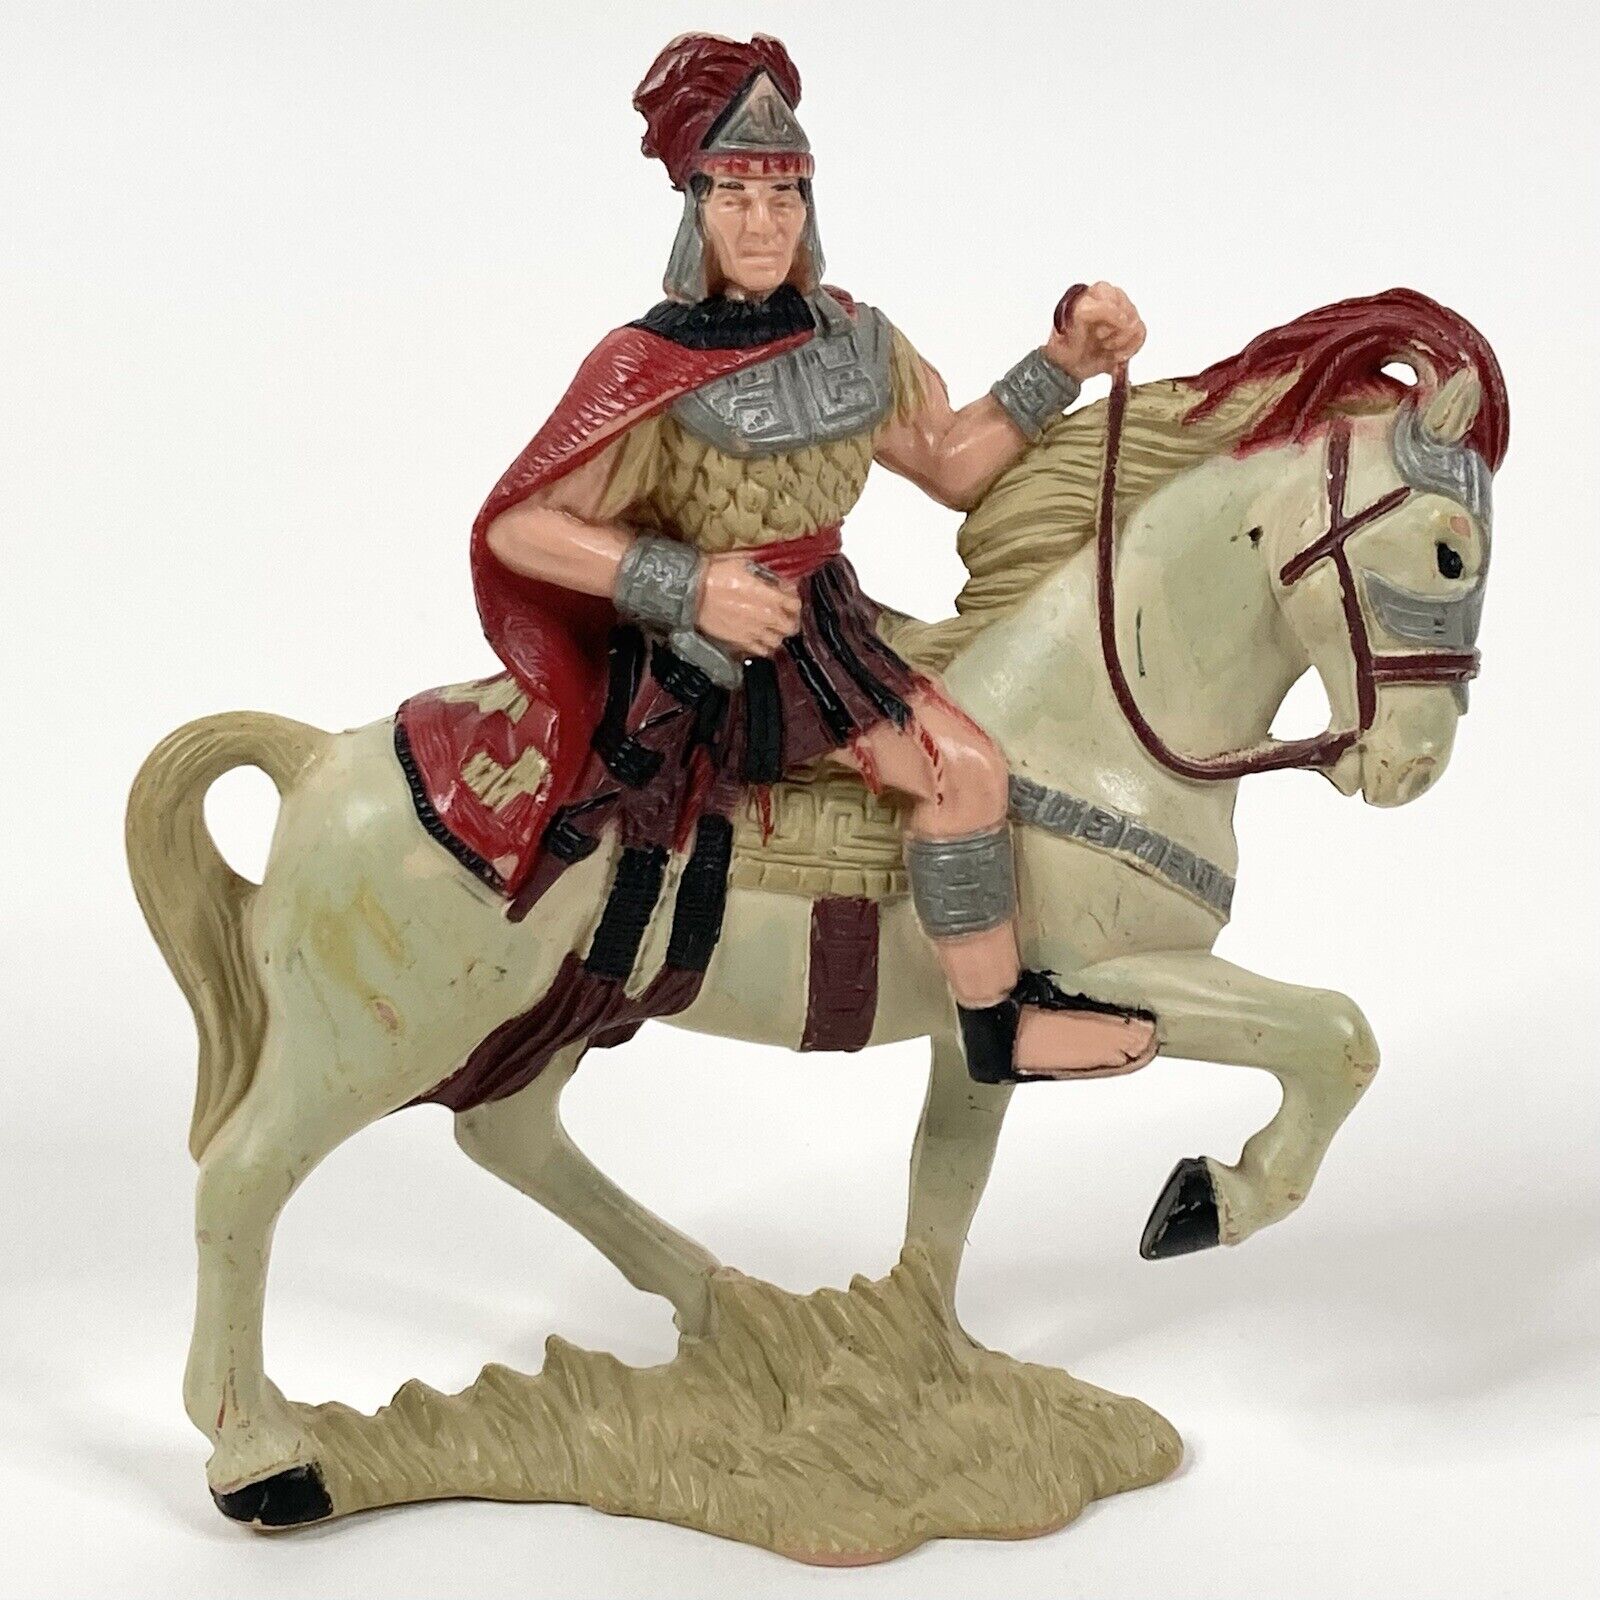 Vintage Helaman Medieval Knight On Horse Figurine 1997 LDD 01011 4” Figure